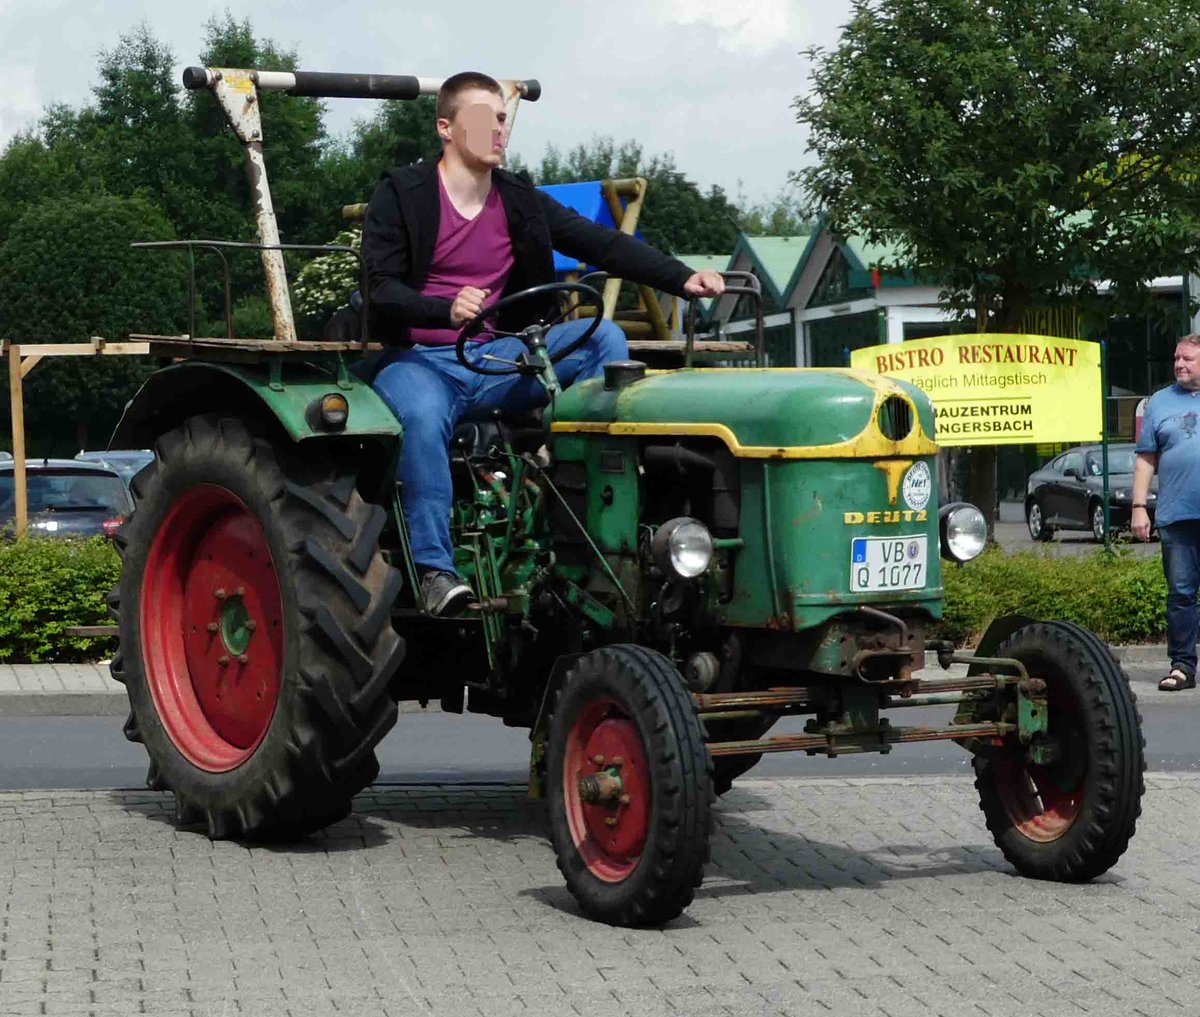 =Deutz besucht die Traktorenausstellung  Ahle Bulldogge us Angeschbach oh Lannehuse  in Angersbach im Juni 2018